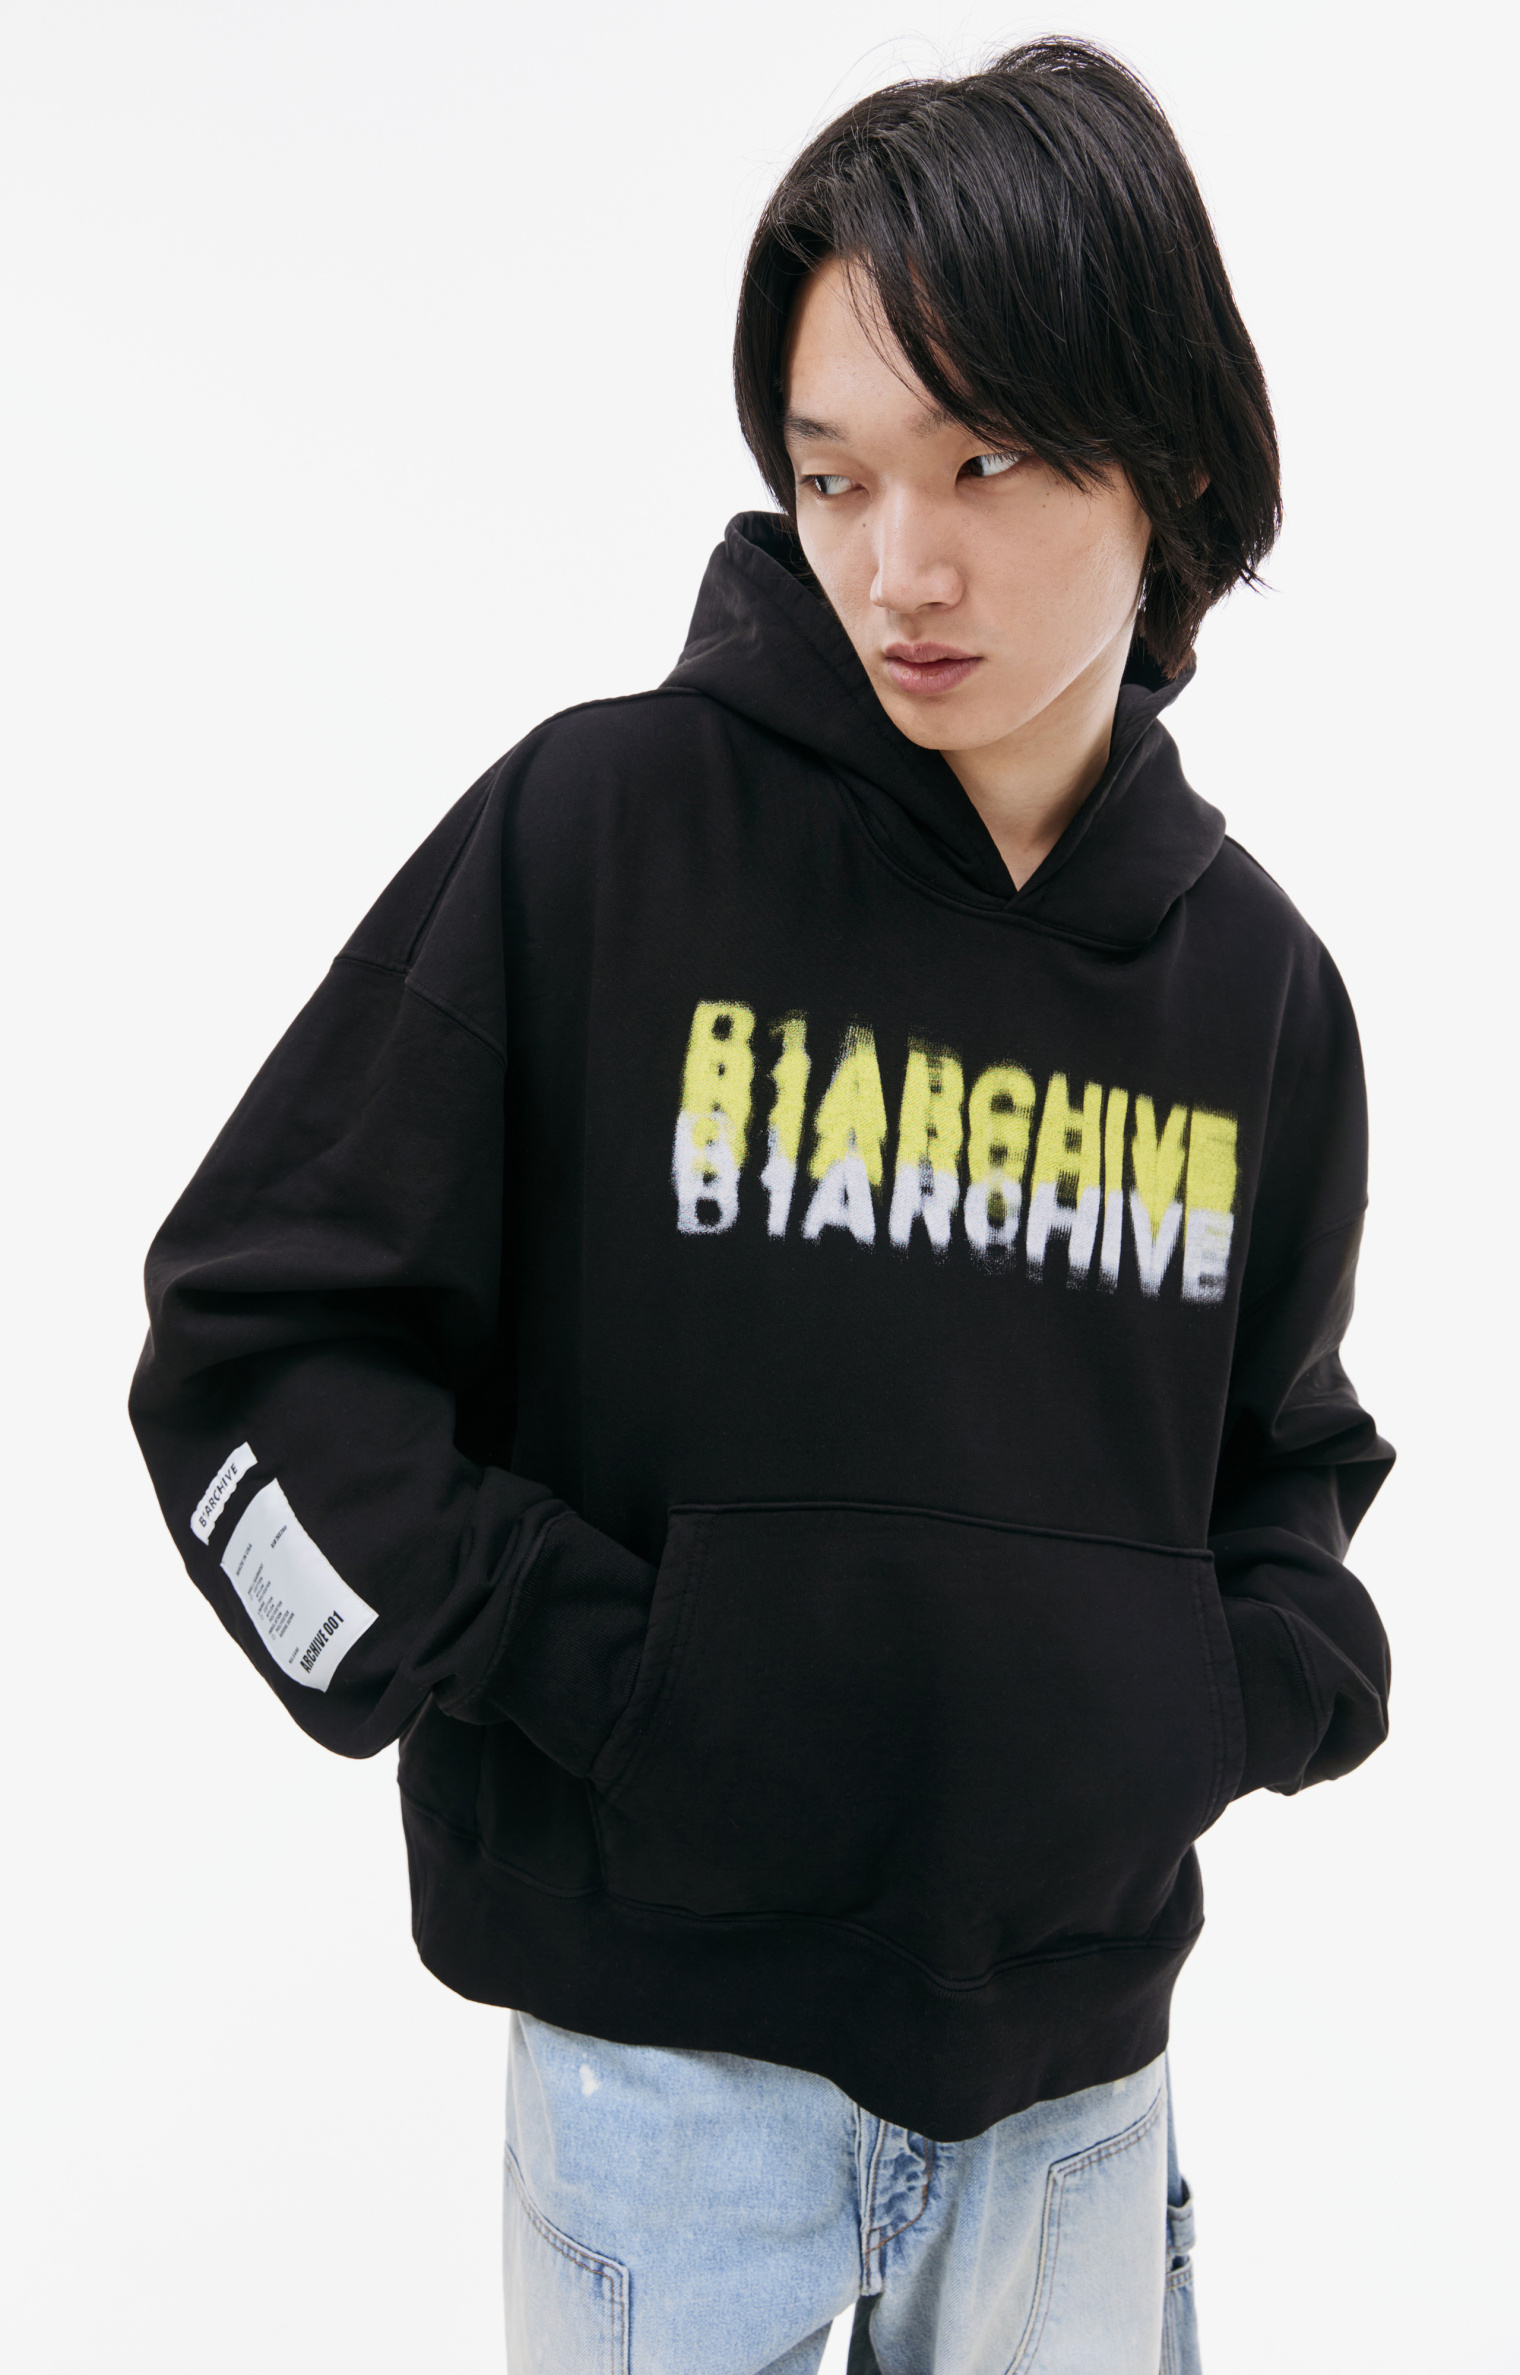 B1ARCHIVE Printed hoodie